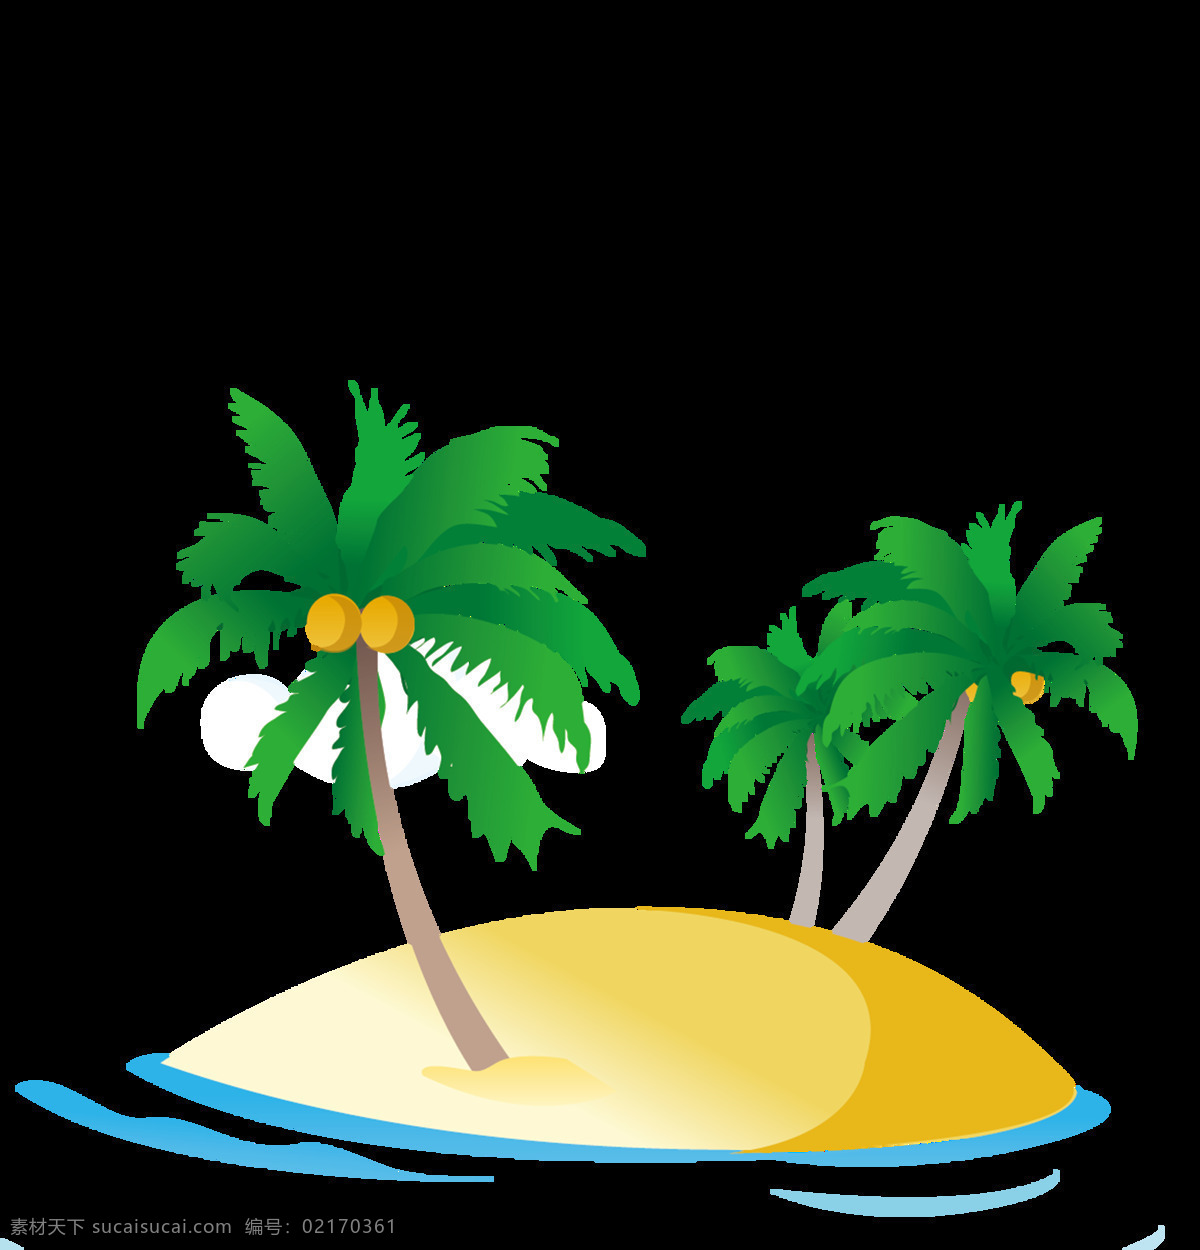 椰子岛 椰子 树 椰子汁 椰果 岛屿 小岛 海岛 浪 水 绿色 插画 元素